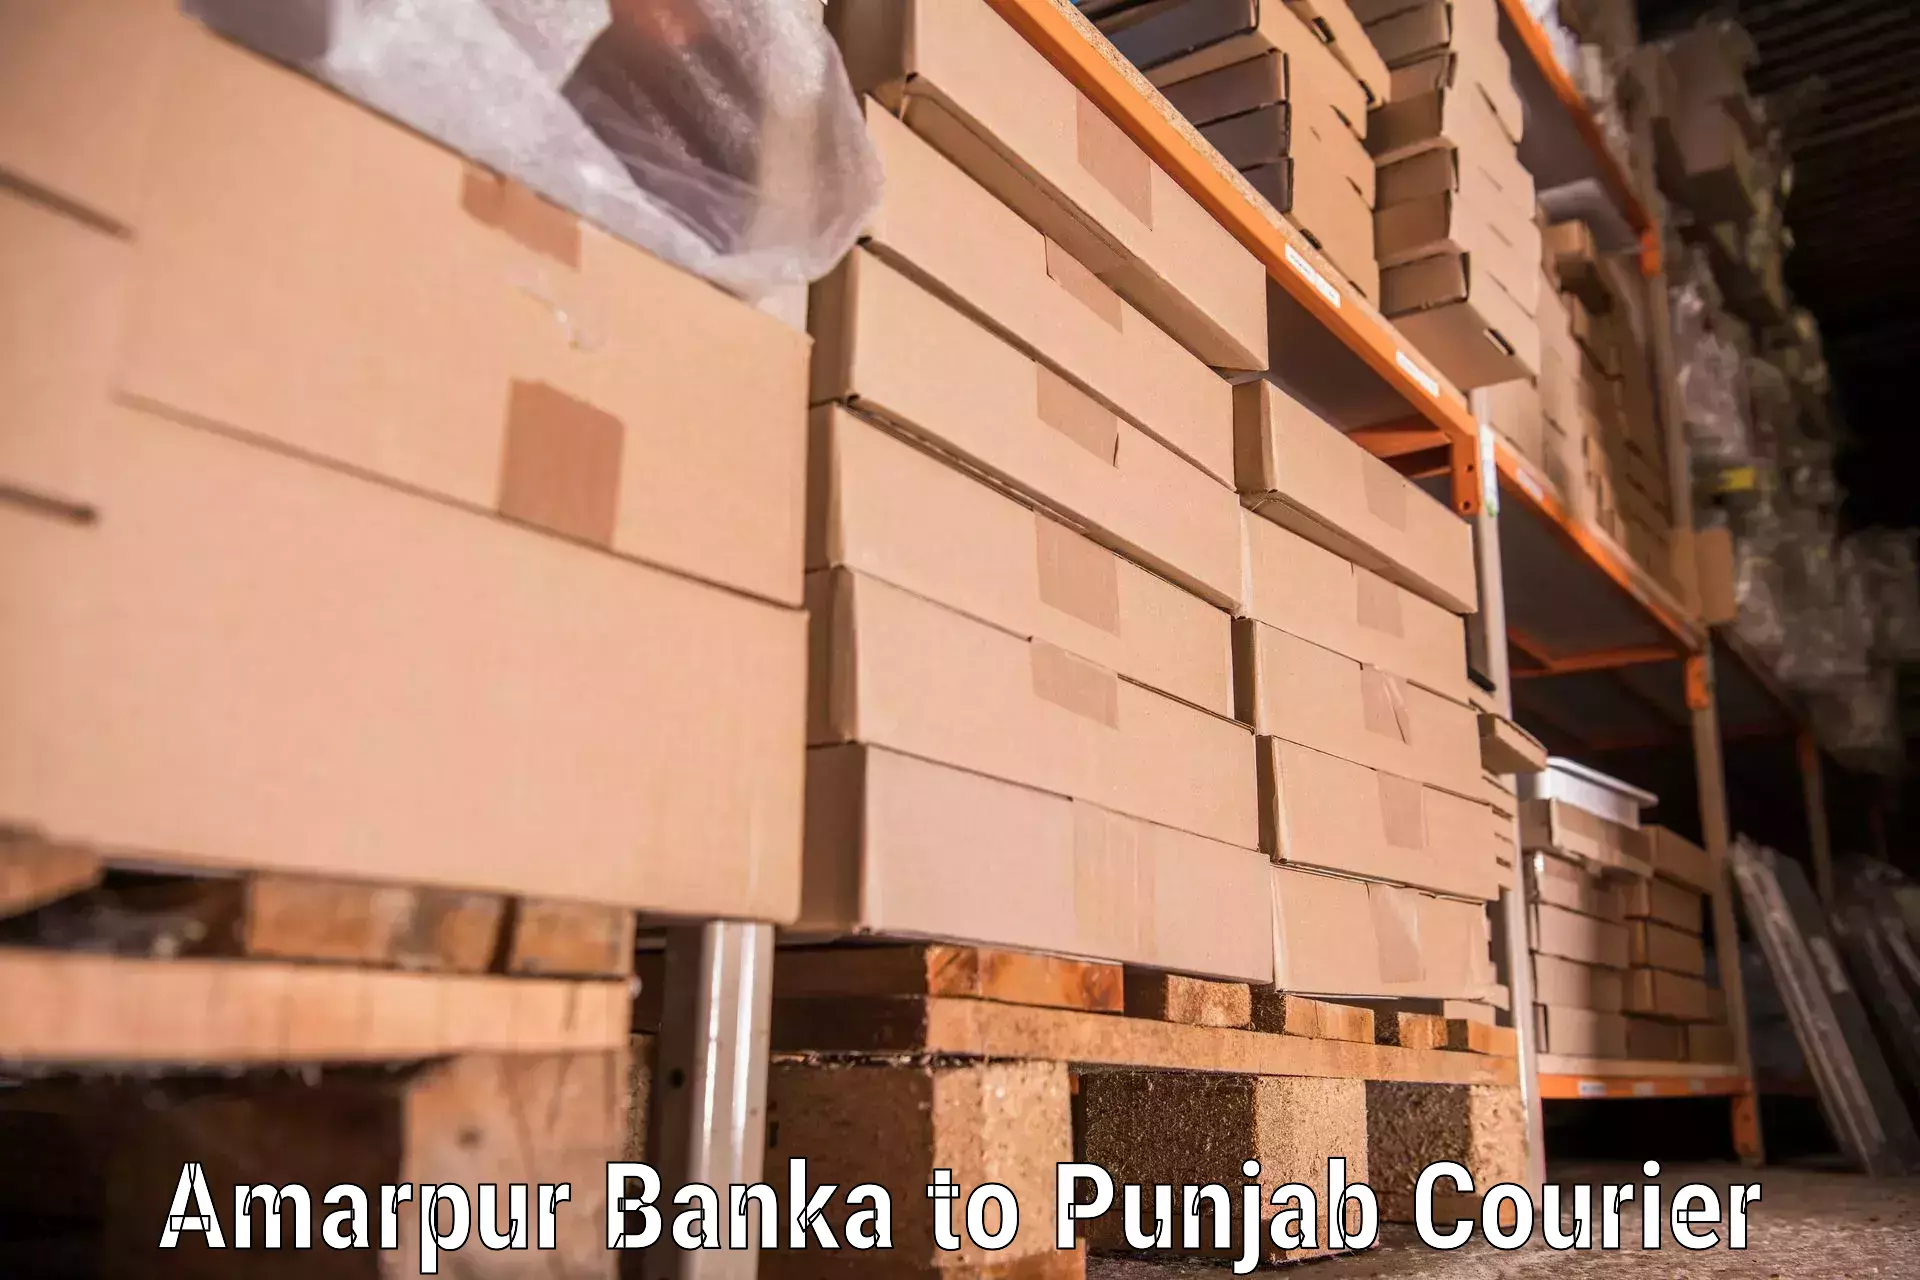 Stress-free household moving in Amarpur Banka to Punjab